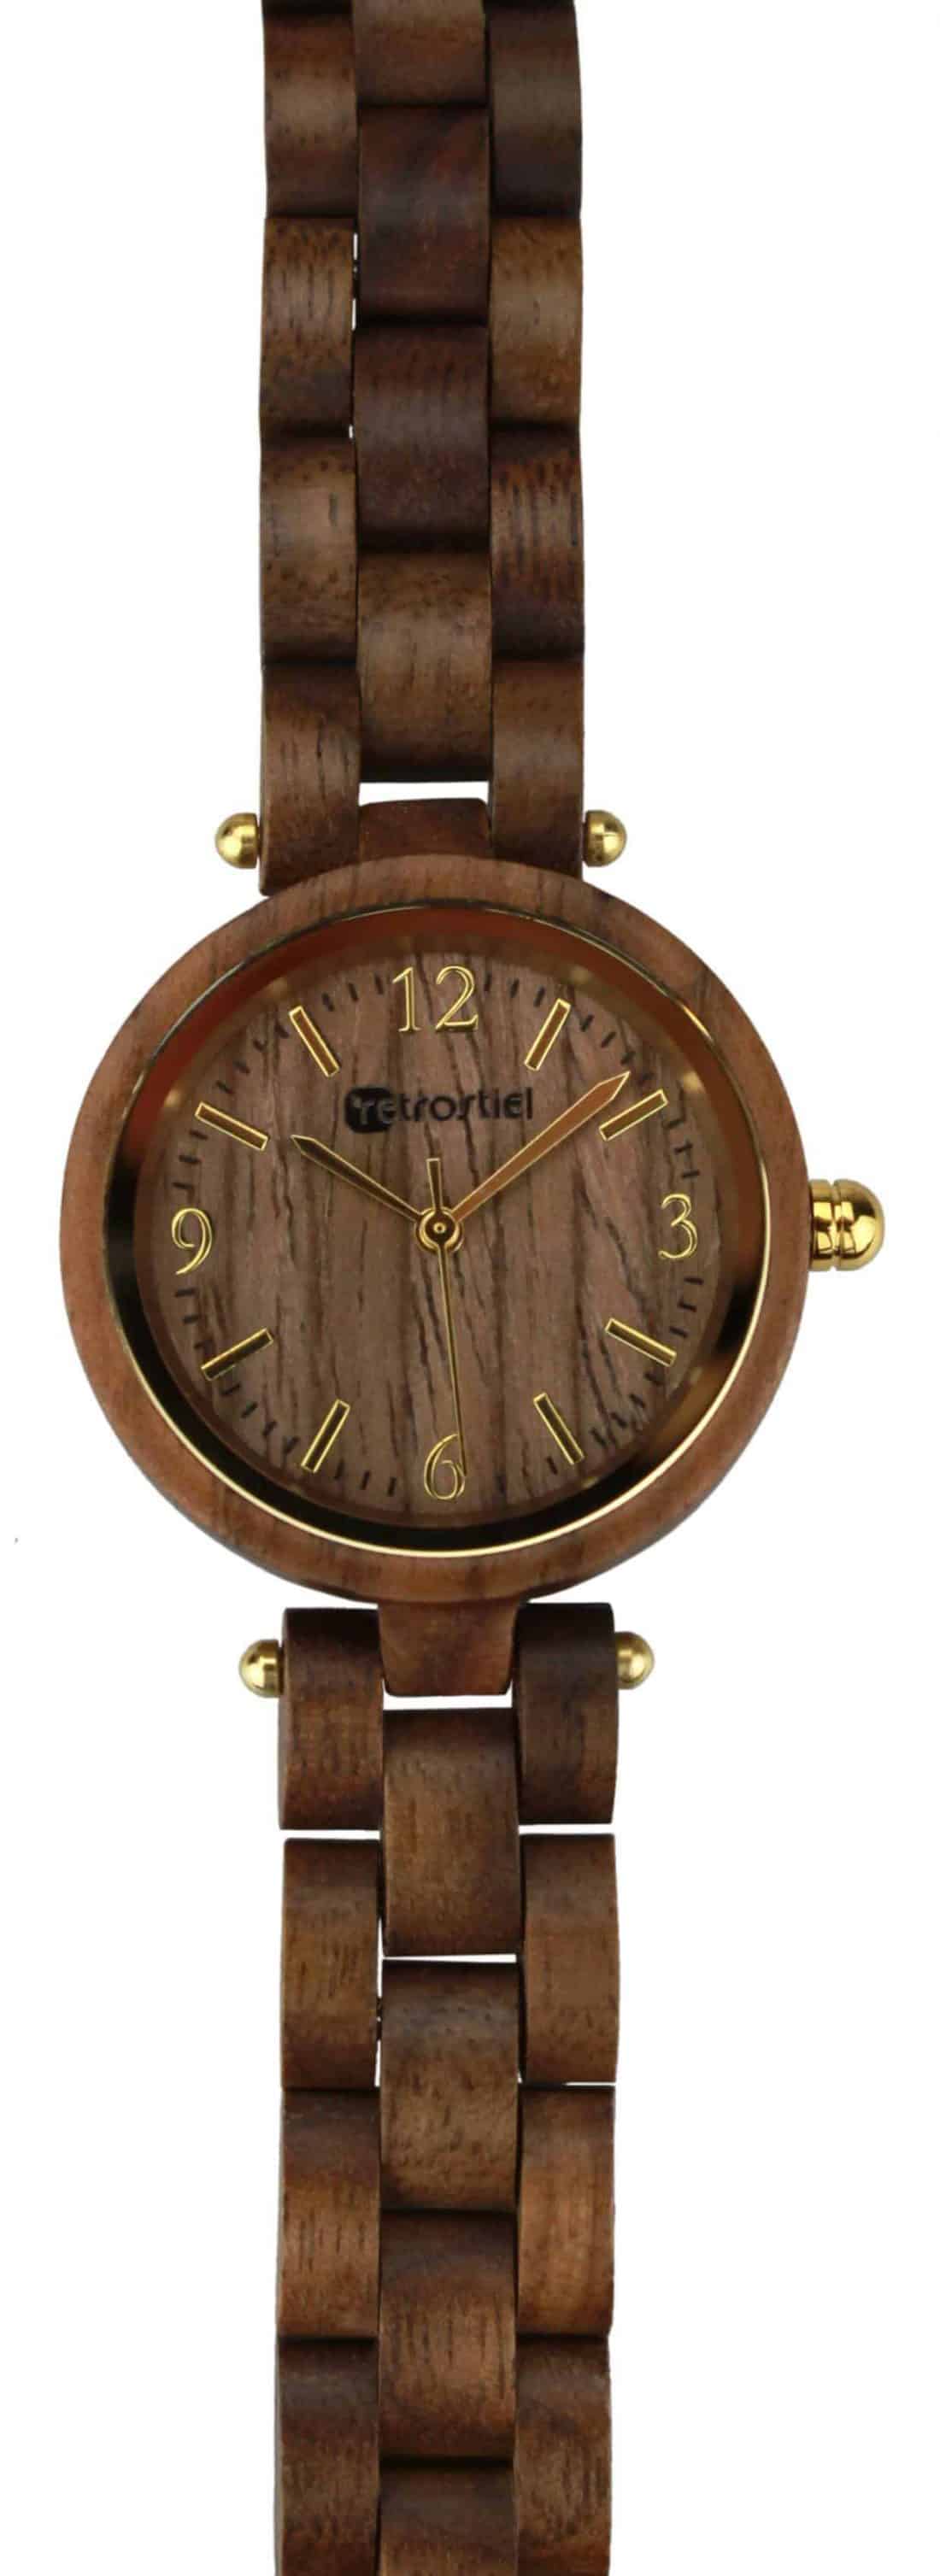 Armbanduhr aus Holz - Venezia Nut